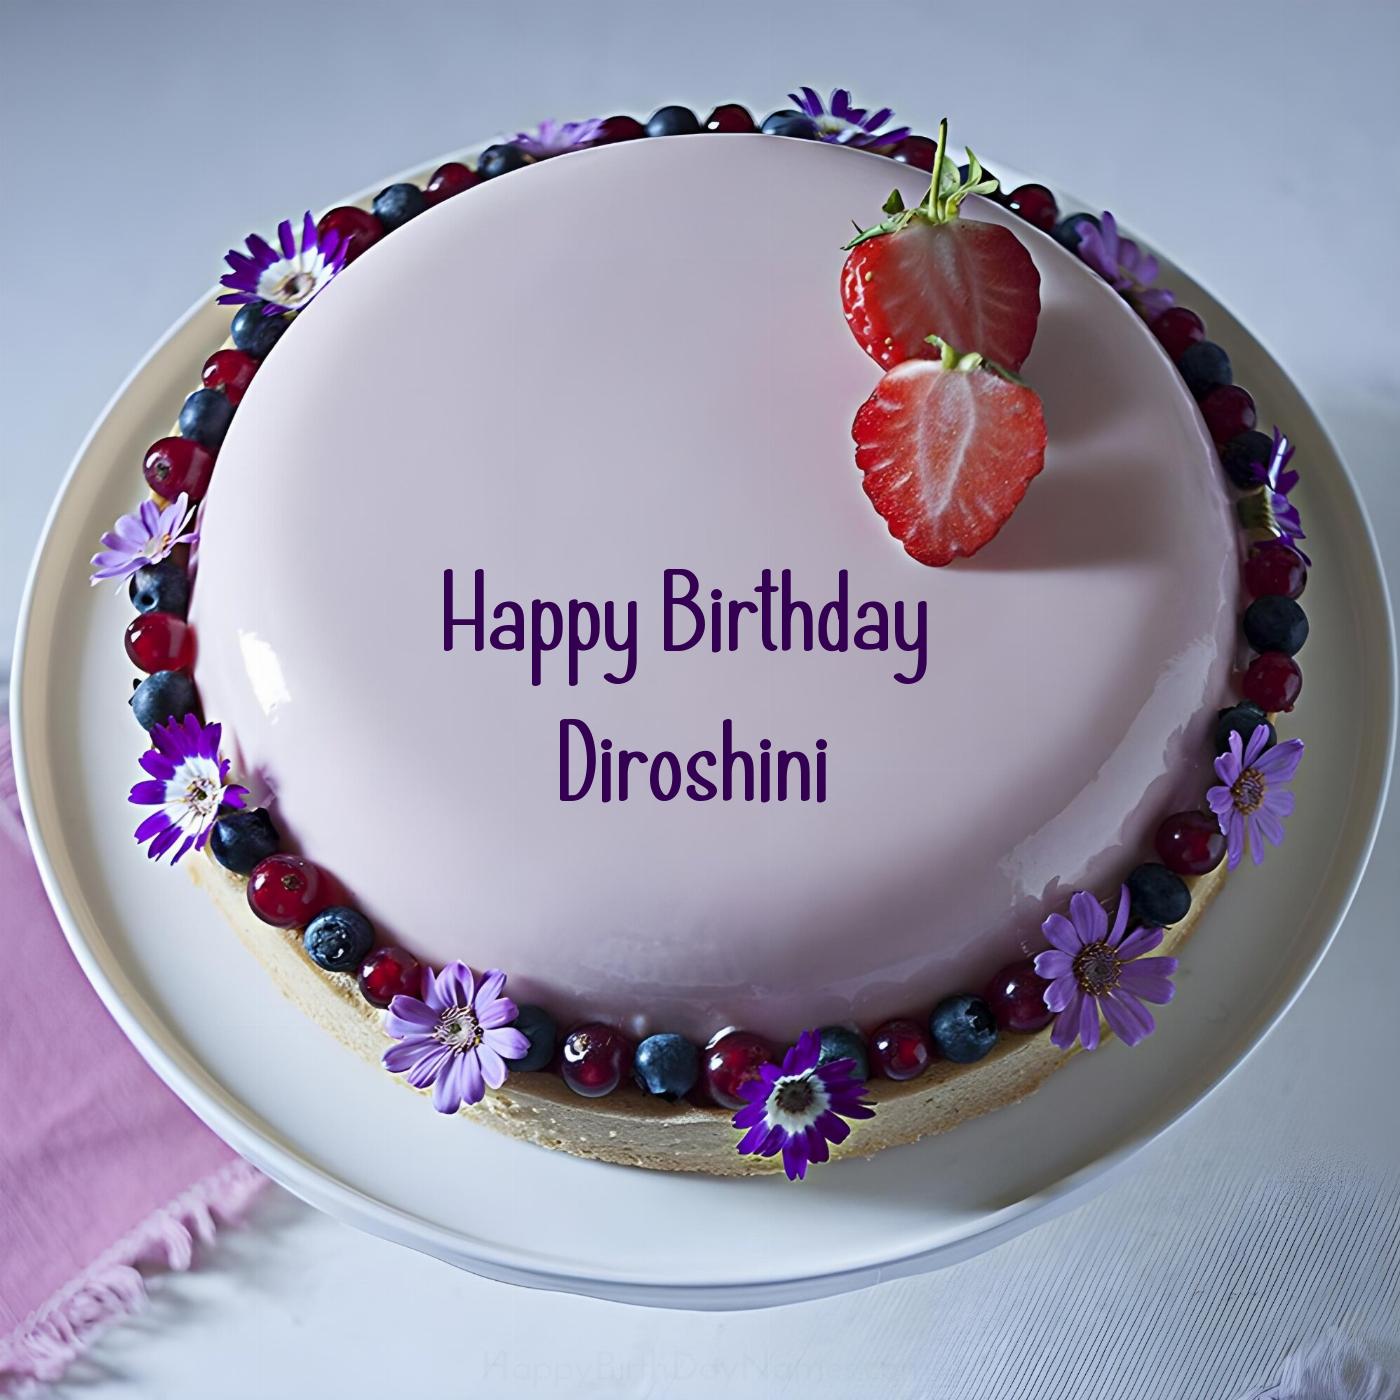 Happy Birthday Diroshini Strawberry Flowers Cake